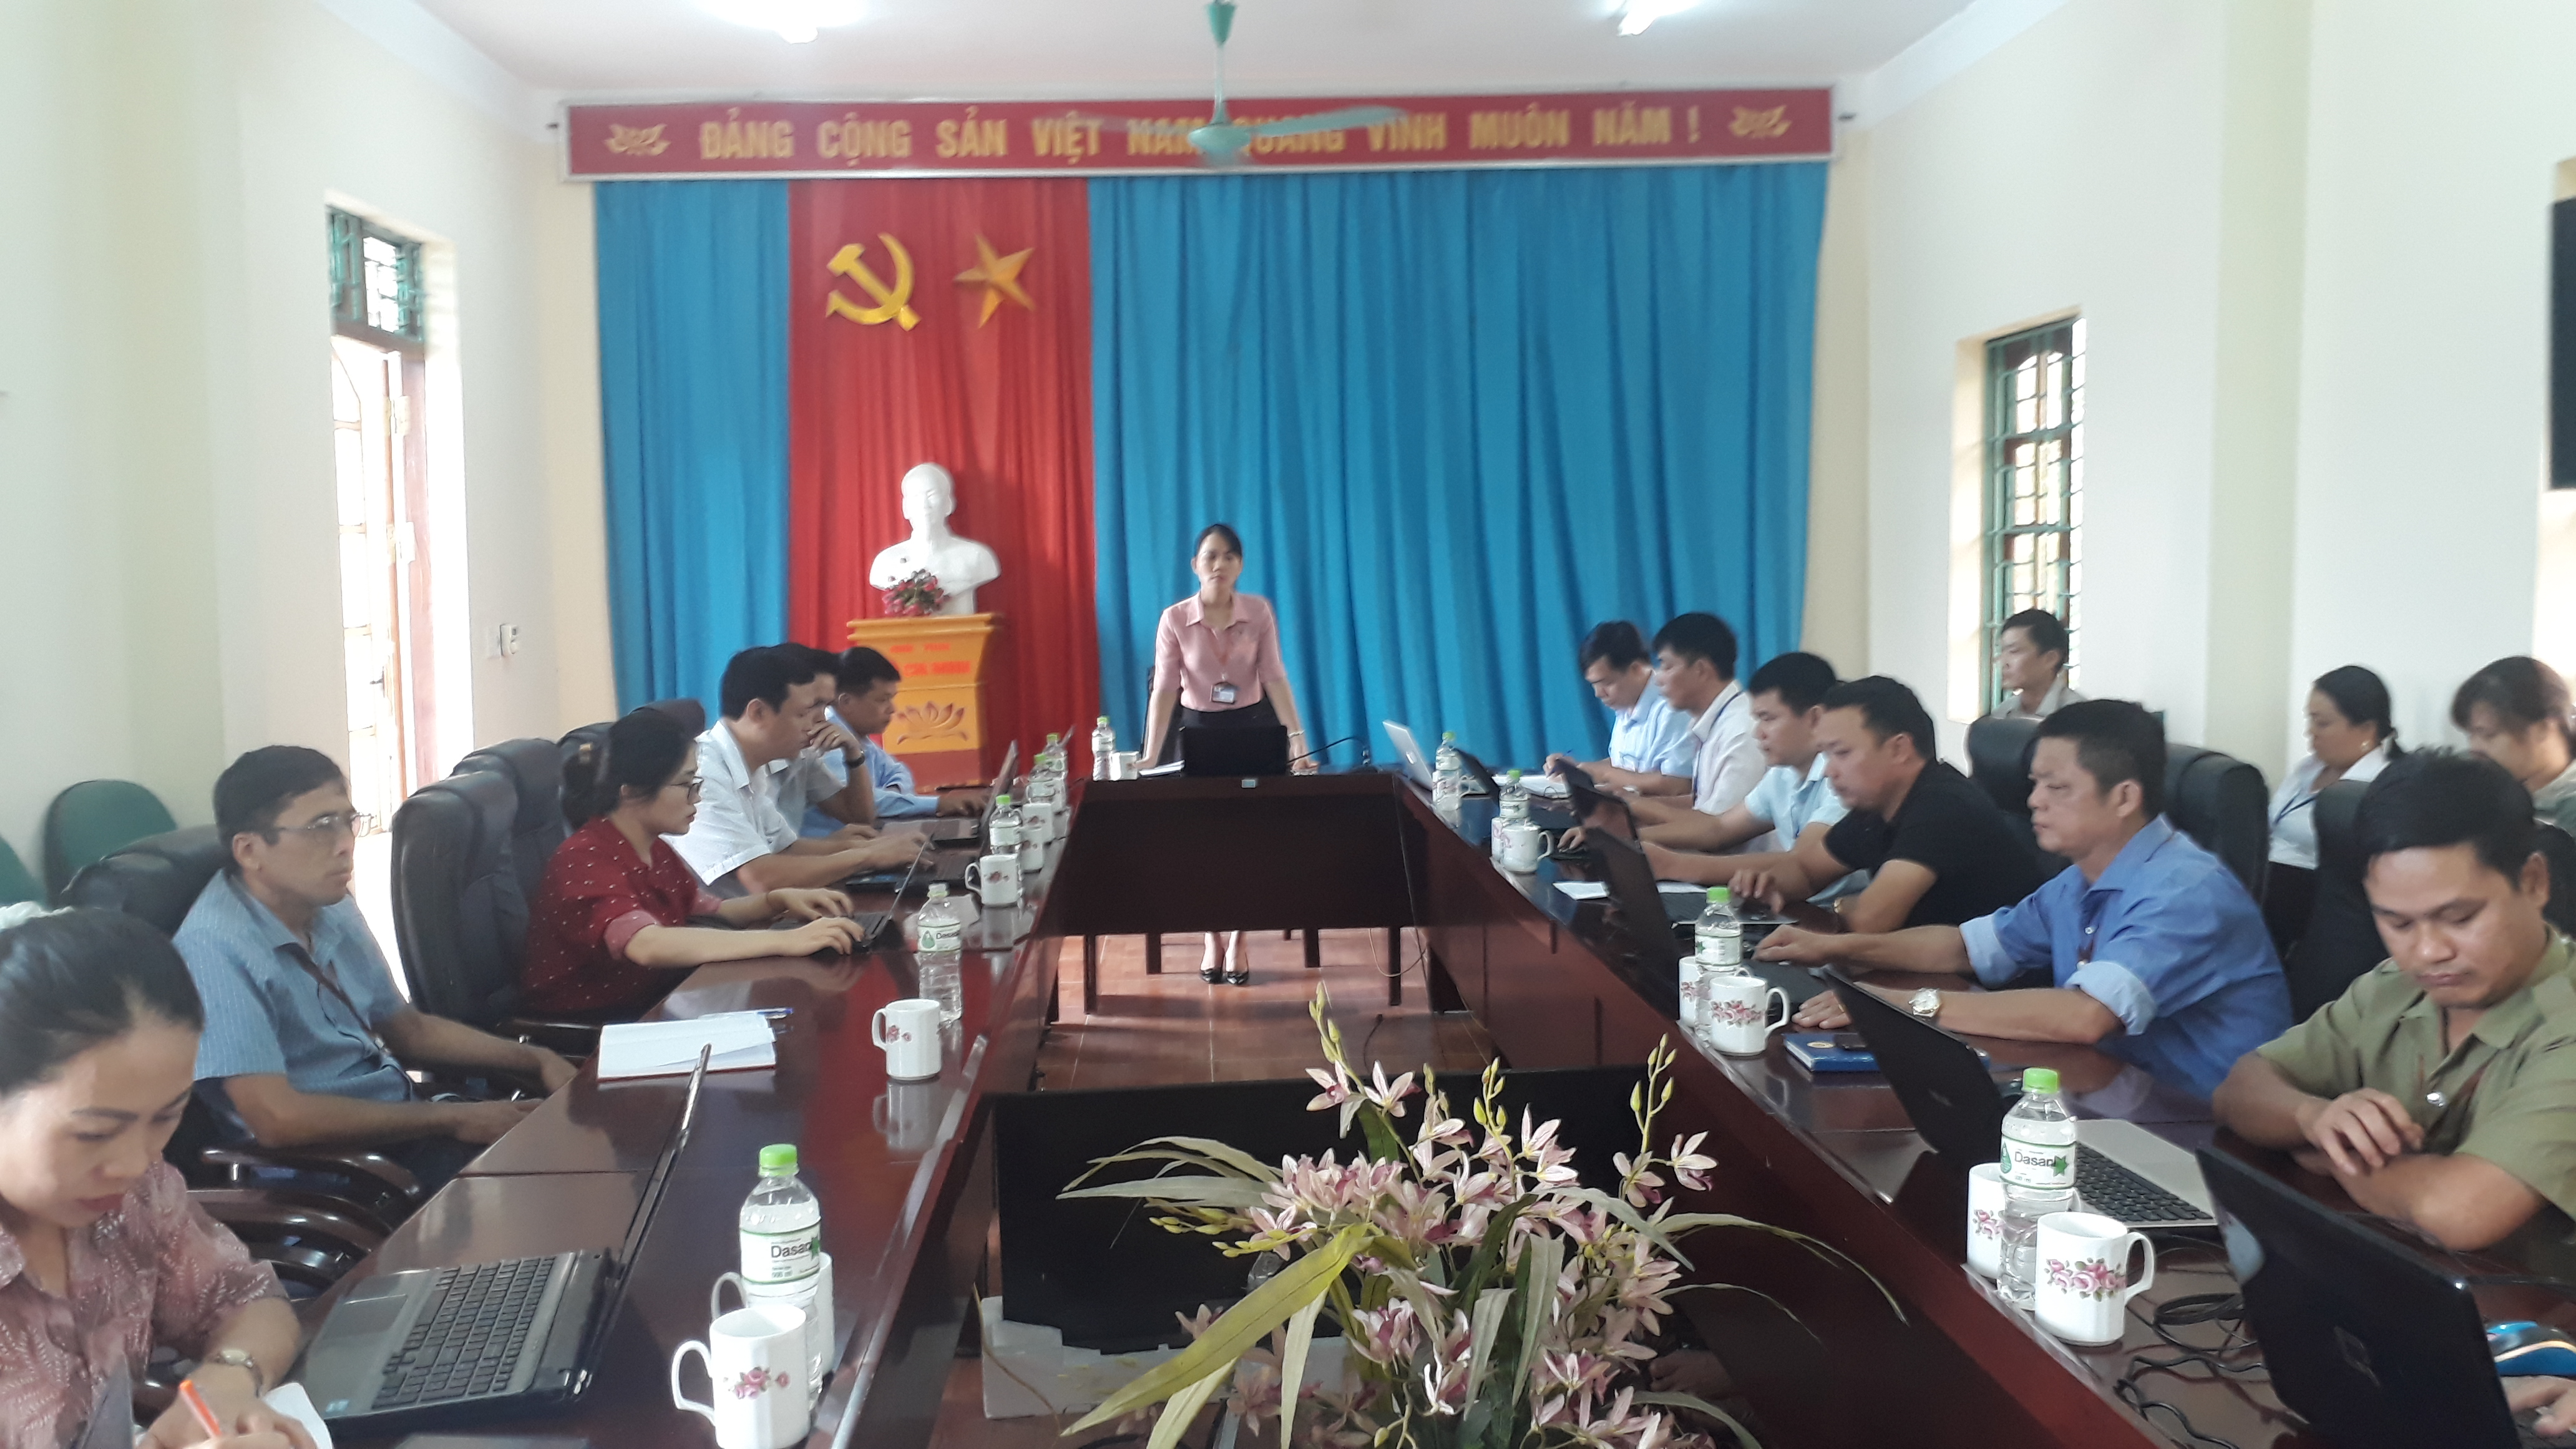 UBND xã Việt Vinh tổ chức họp thành viên UBND tháng 9 năm 2019.